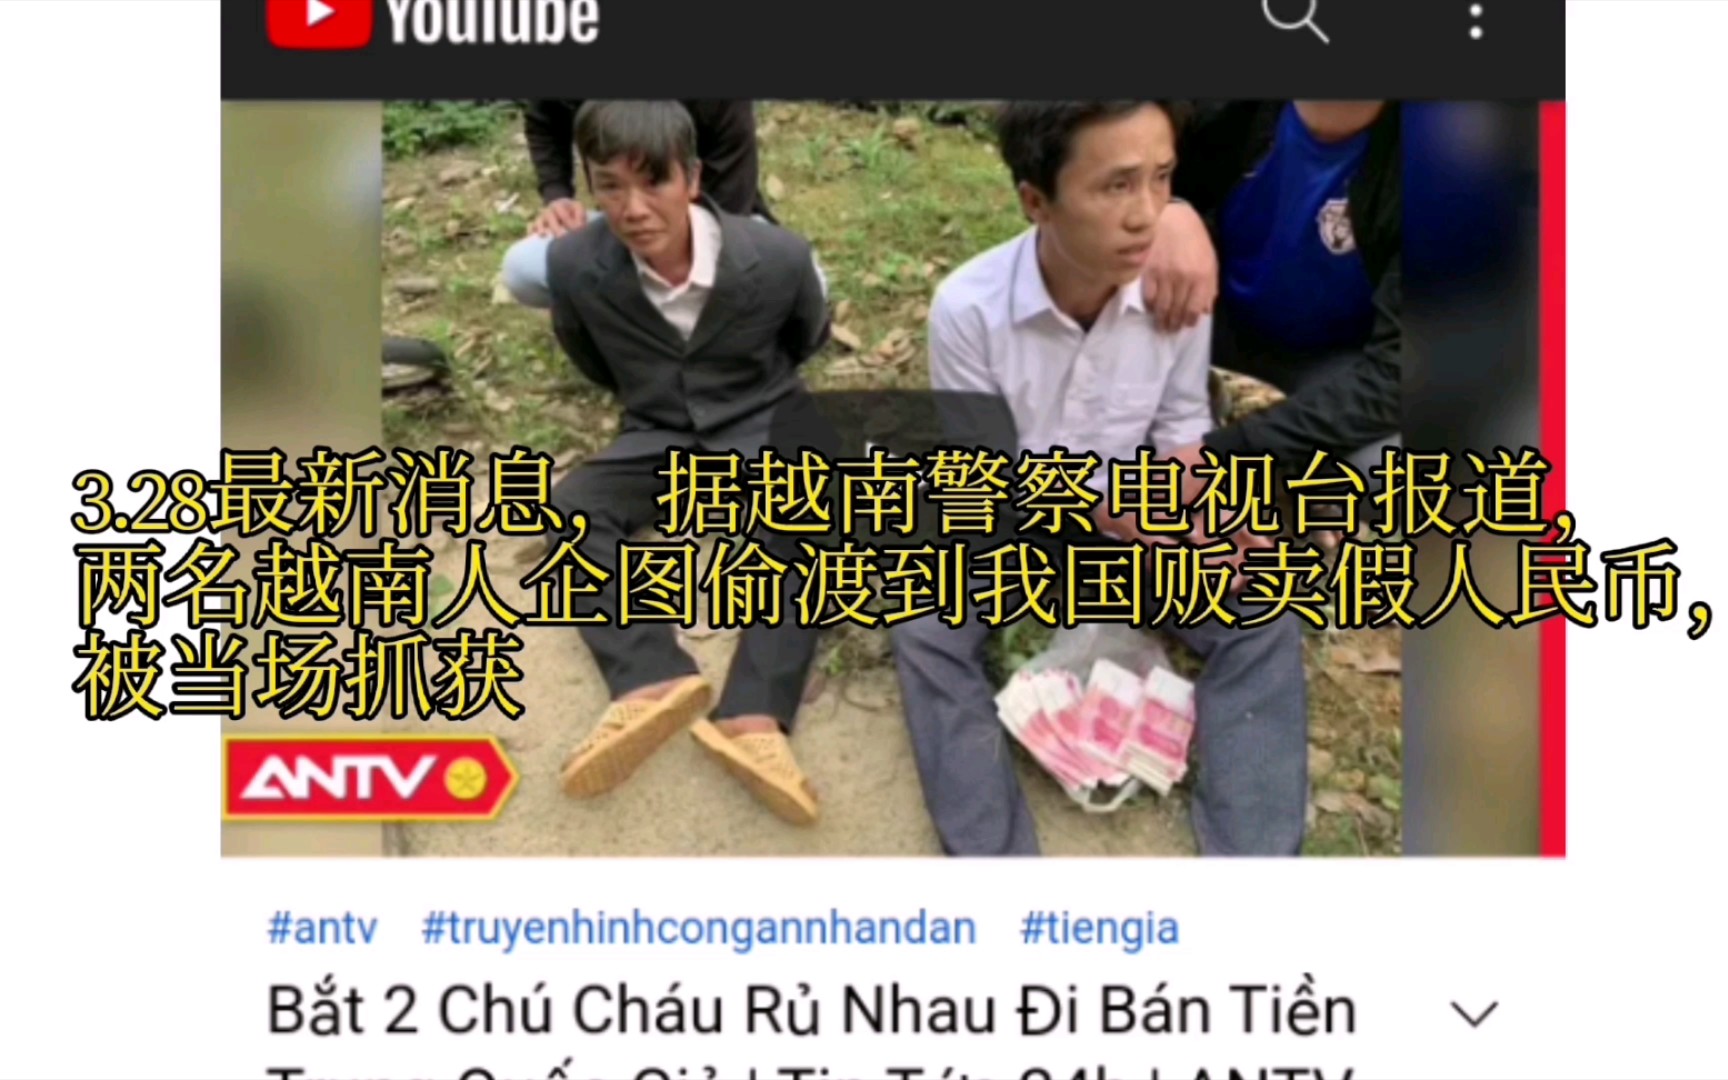 油管视频，两名越南猴子企图偷渡到我国贩卖假币，被当场抓获